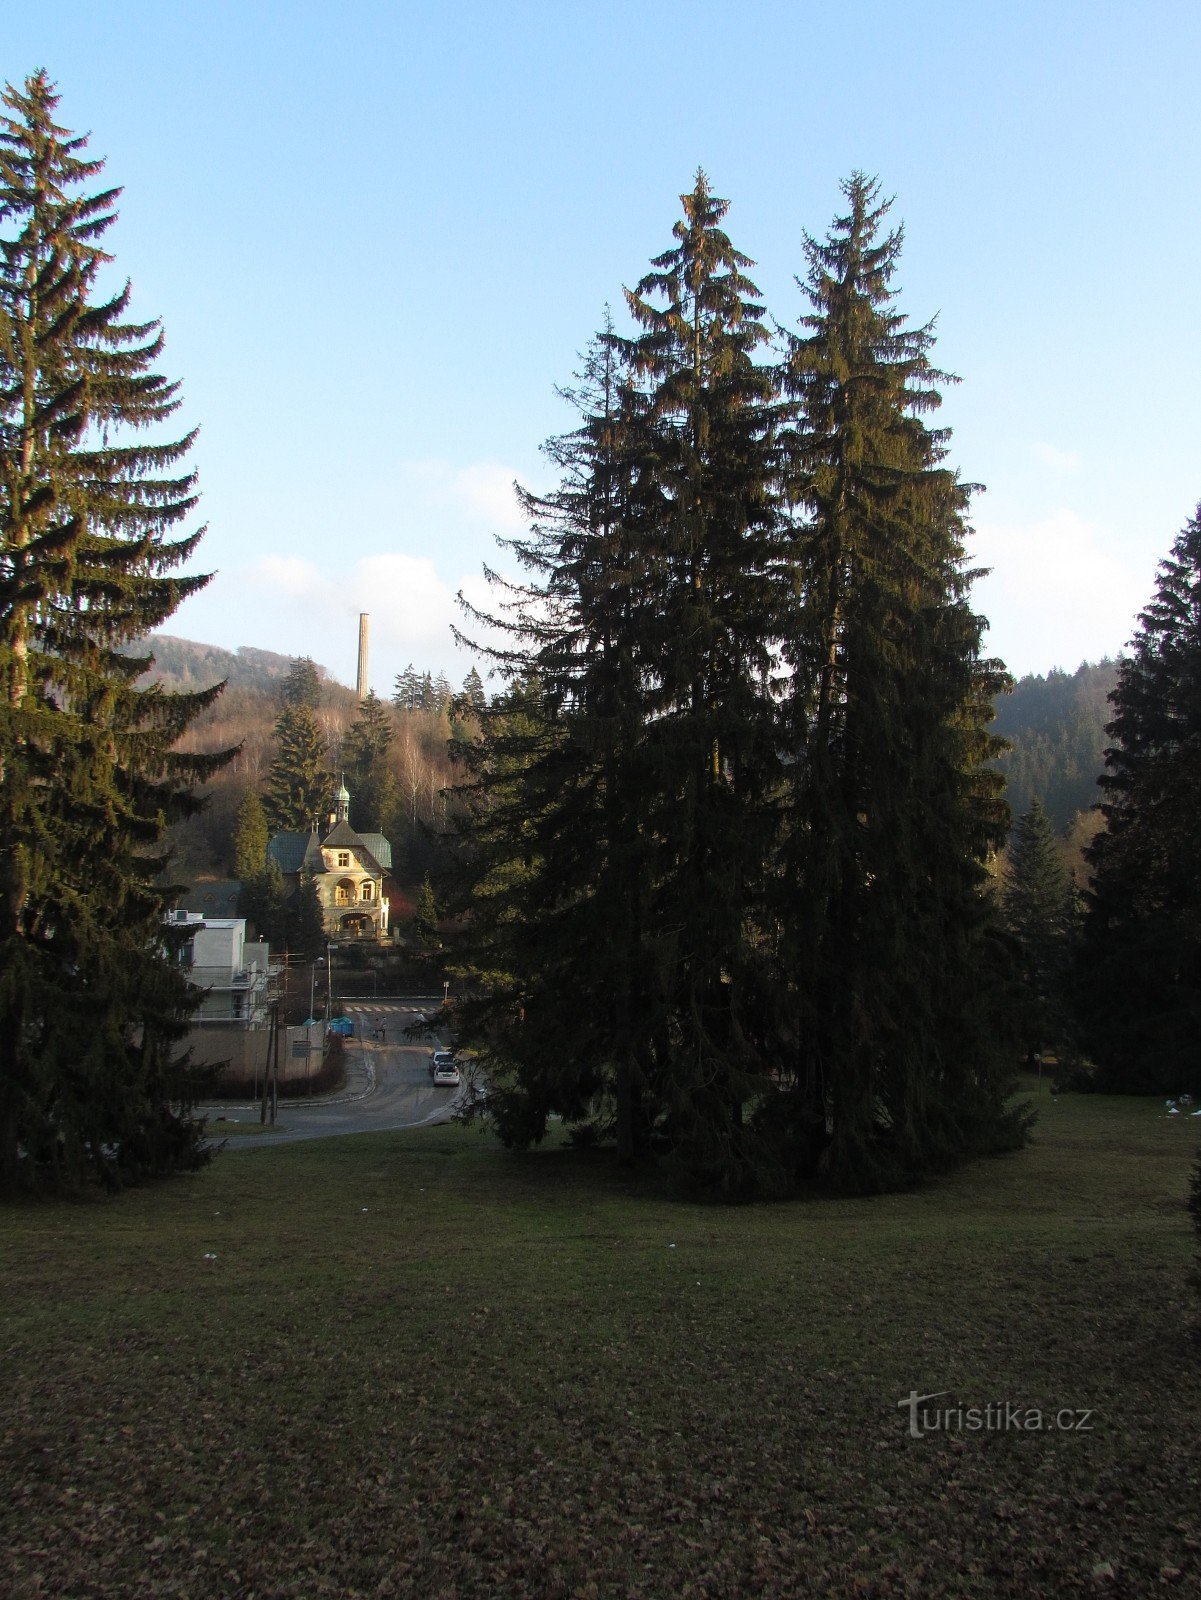 Luhačovice - tàn tích của túp lều Slovak